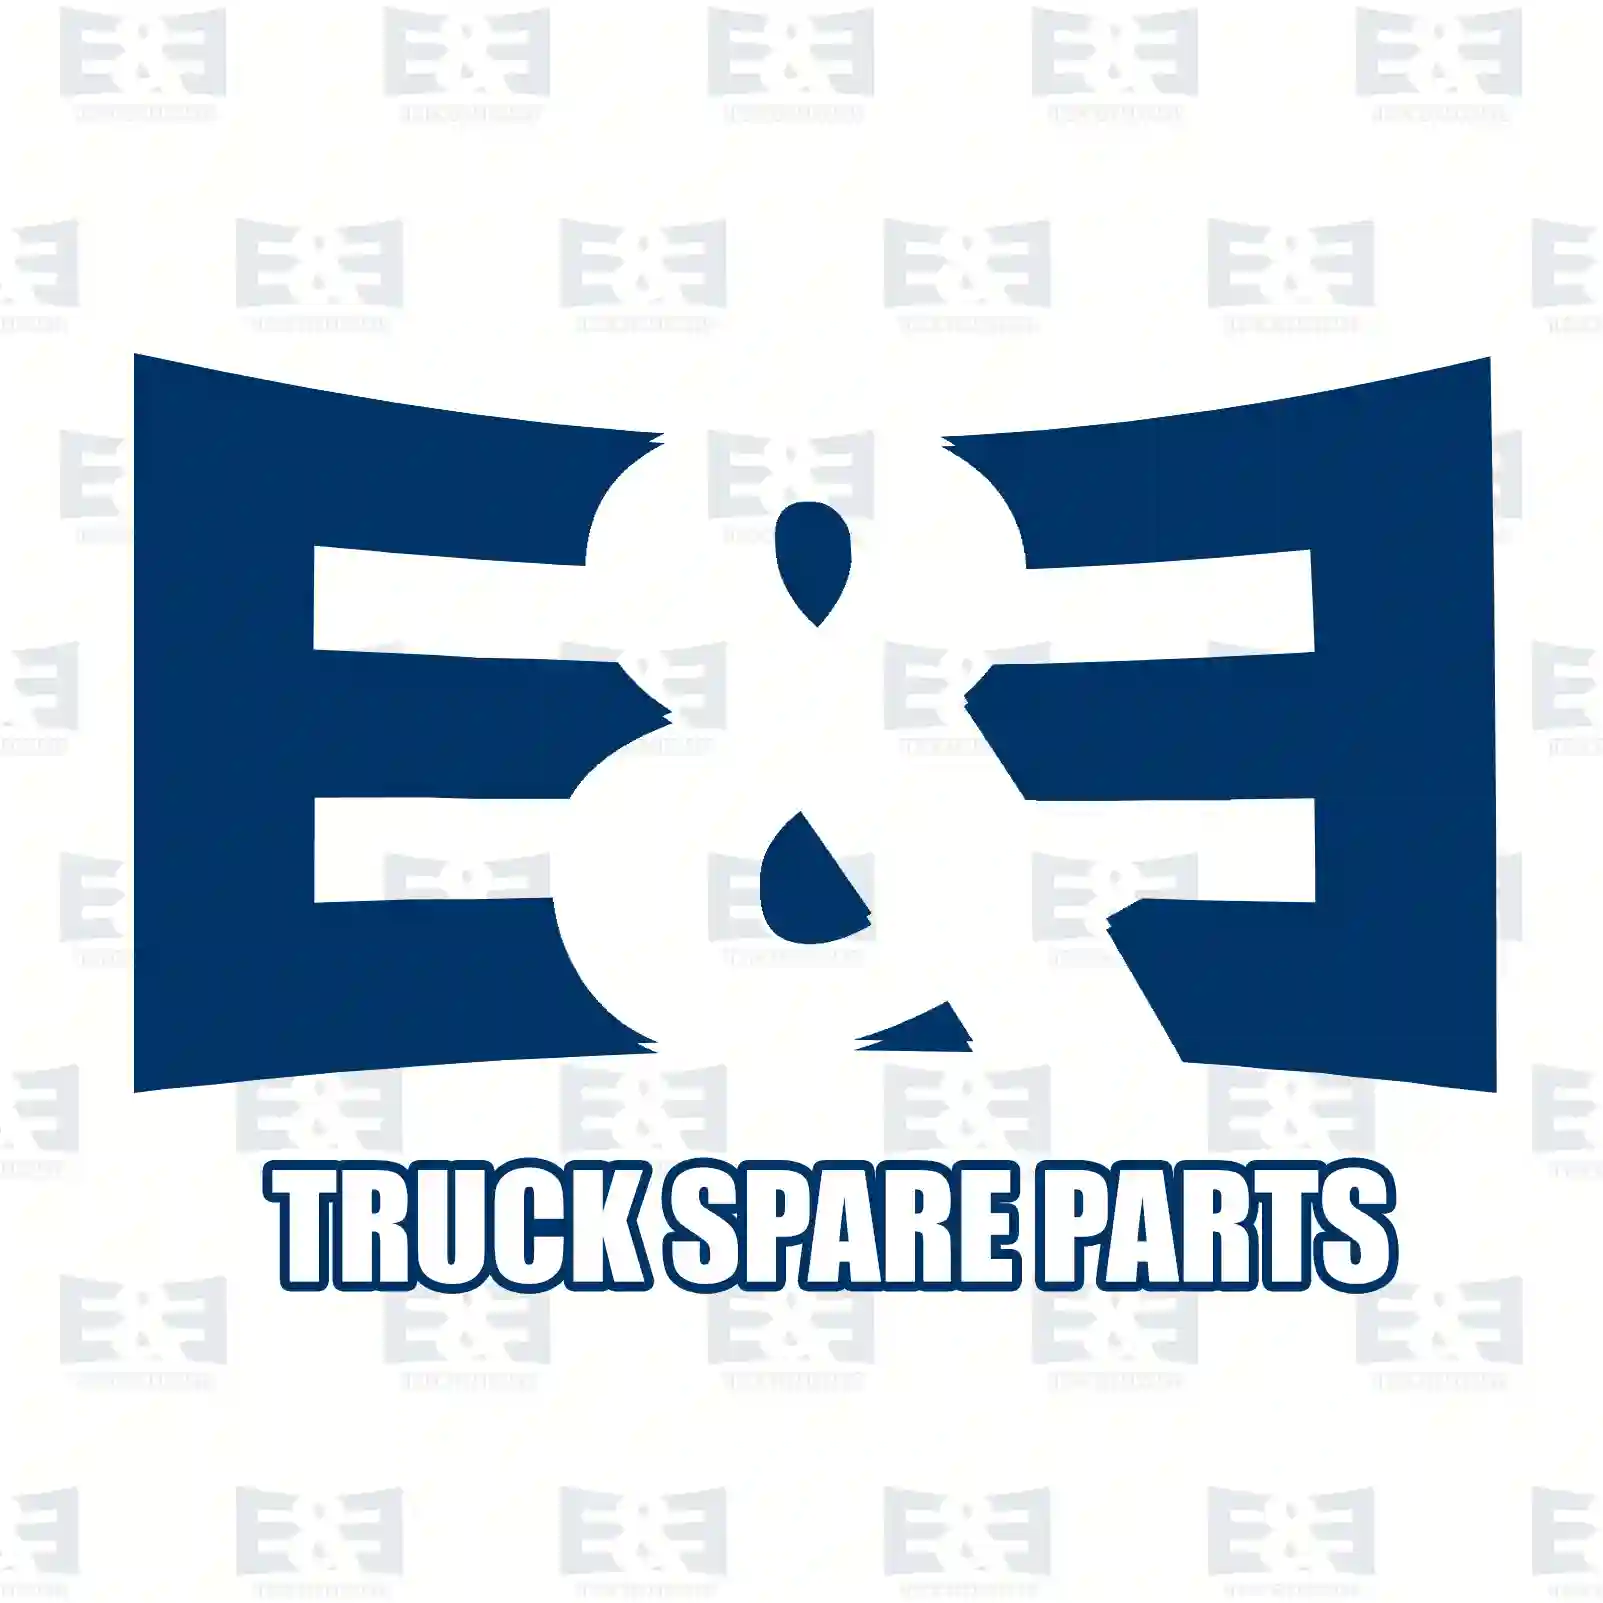 Air filter, 2E2204755, 0040942204, 8319147187, 83191471870, ||  2E2204755 E&E Truck Spare Parts | Truck Spare Parts, Auotomotive Spare Parts Air filter, 2E2204755, 0040942204, 8319147187, 83191471870, ||  2E2204755 E&E Truck Spare Parts | Truck Spare Parts, Auotomotive Spare Parts